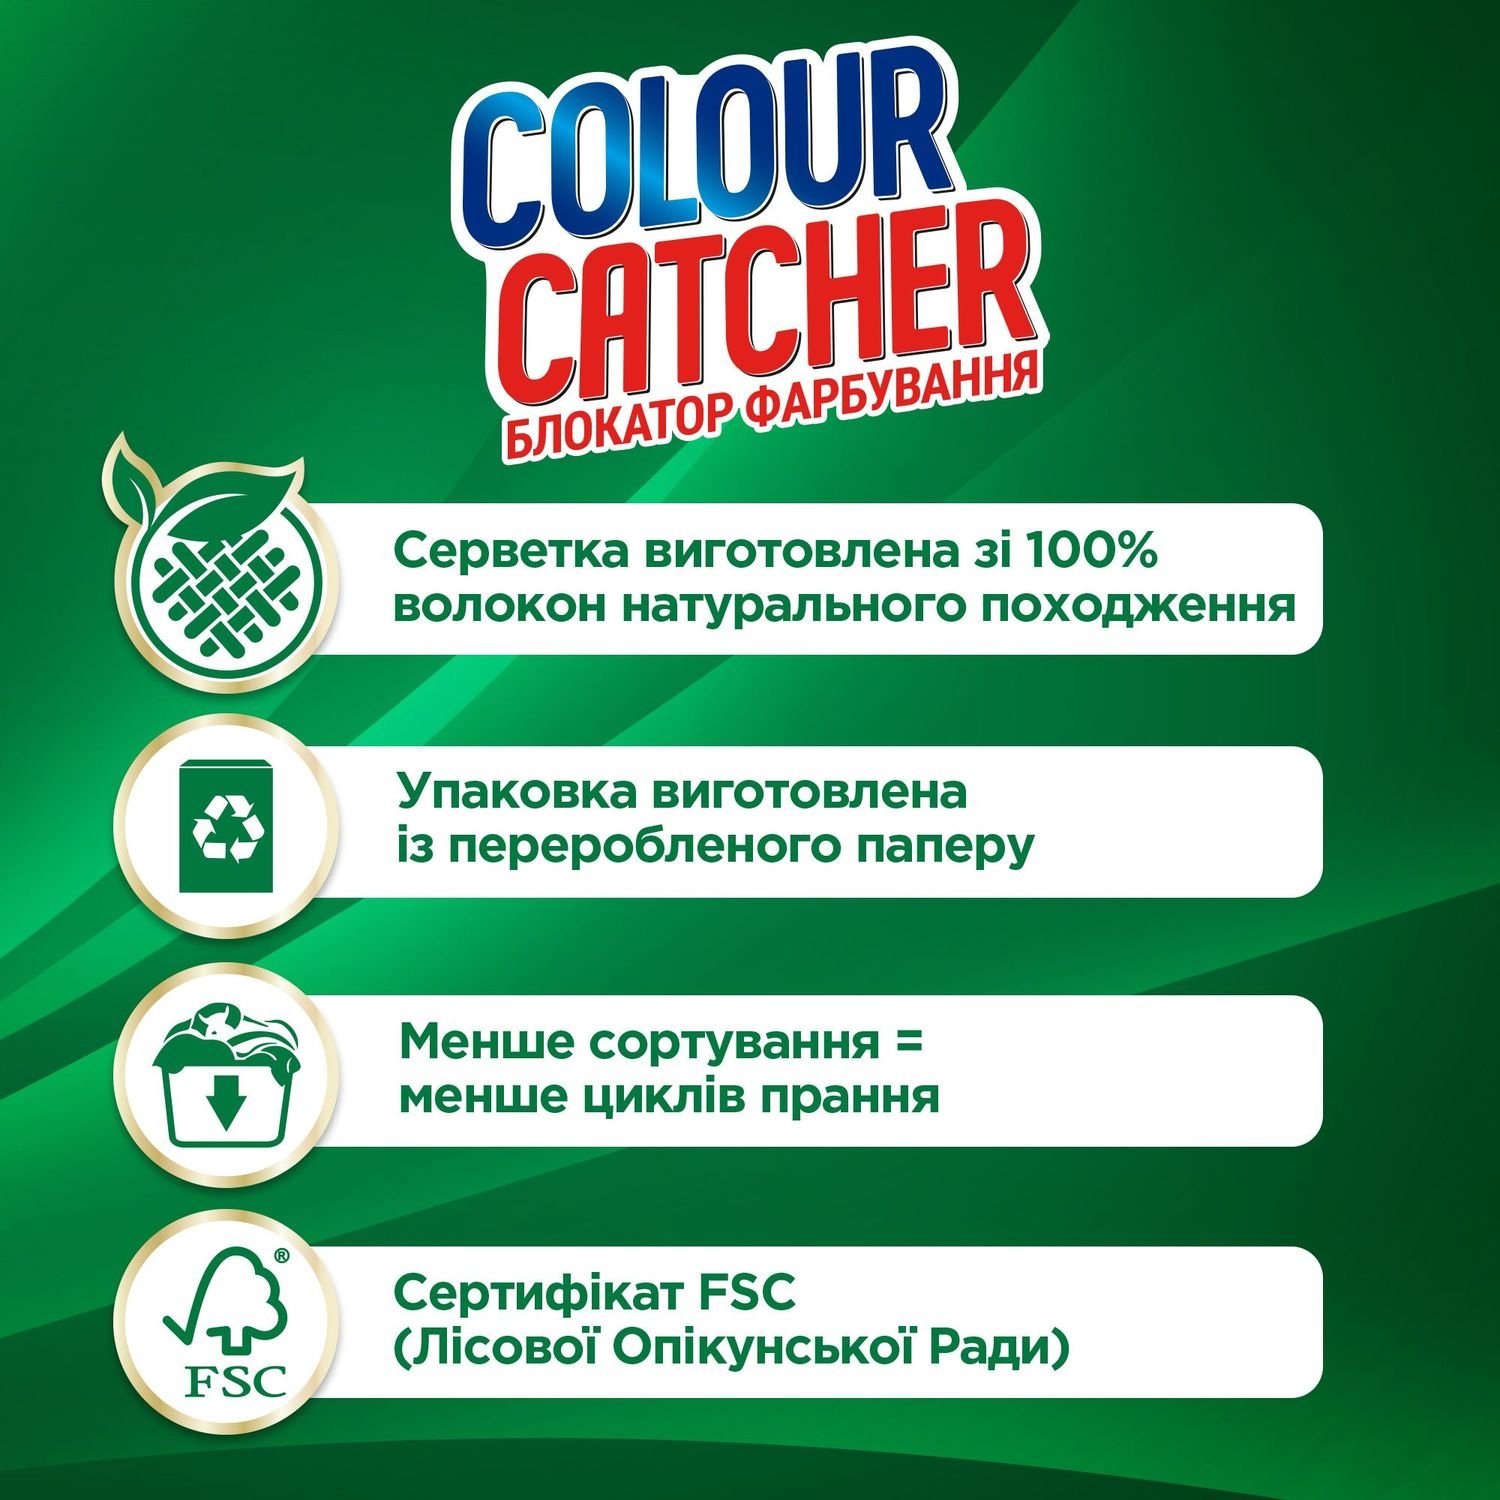 Салфетки для стирки K2r Colour Catcher цветопоглощение 20 шт. - фото 4